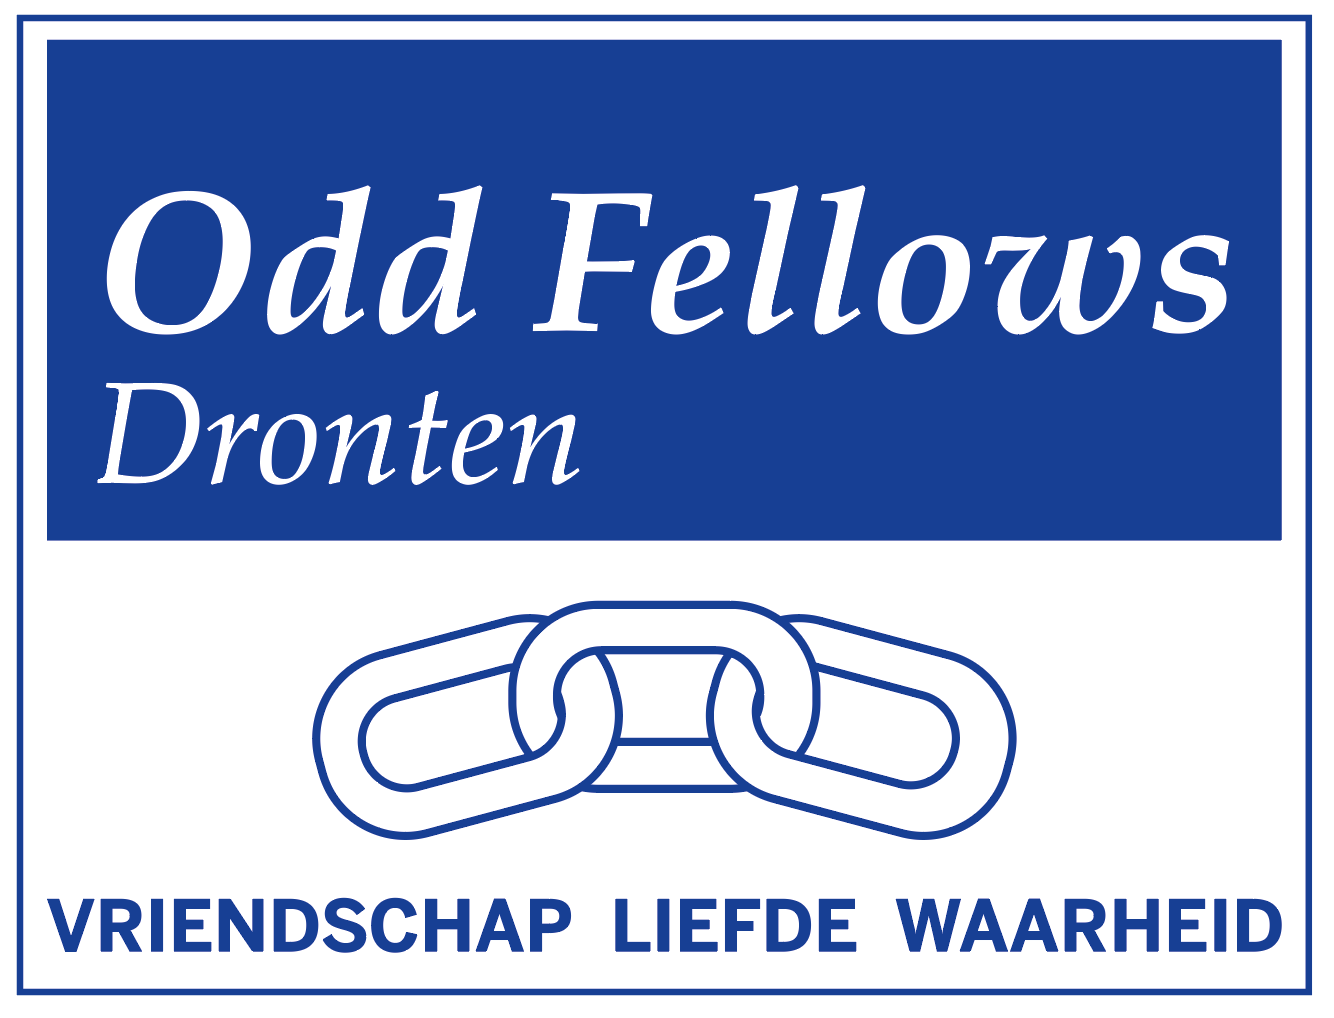 Logo Odd Fellows Dronten